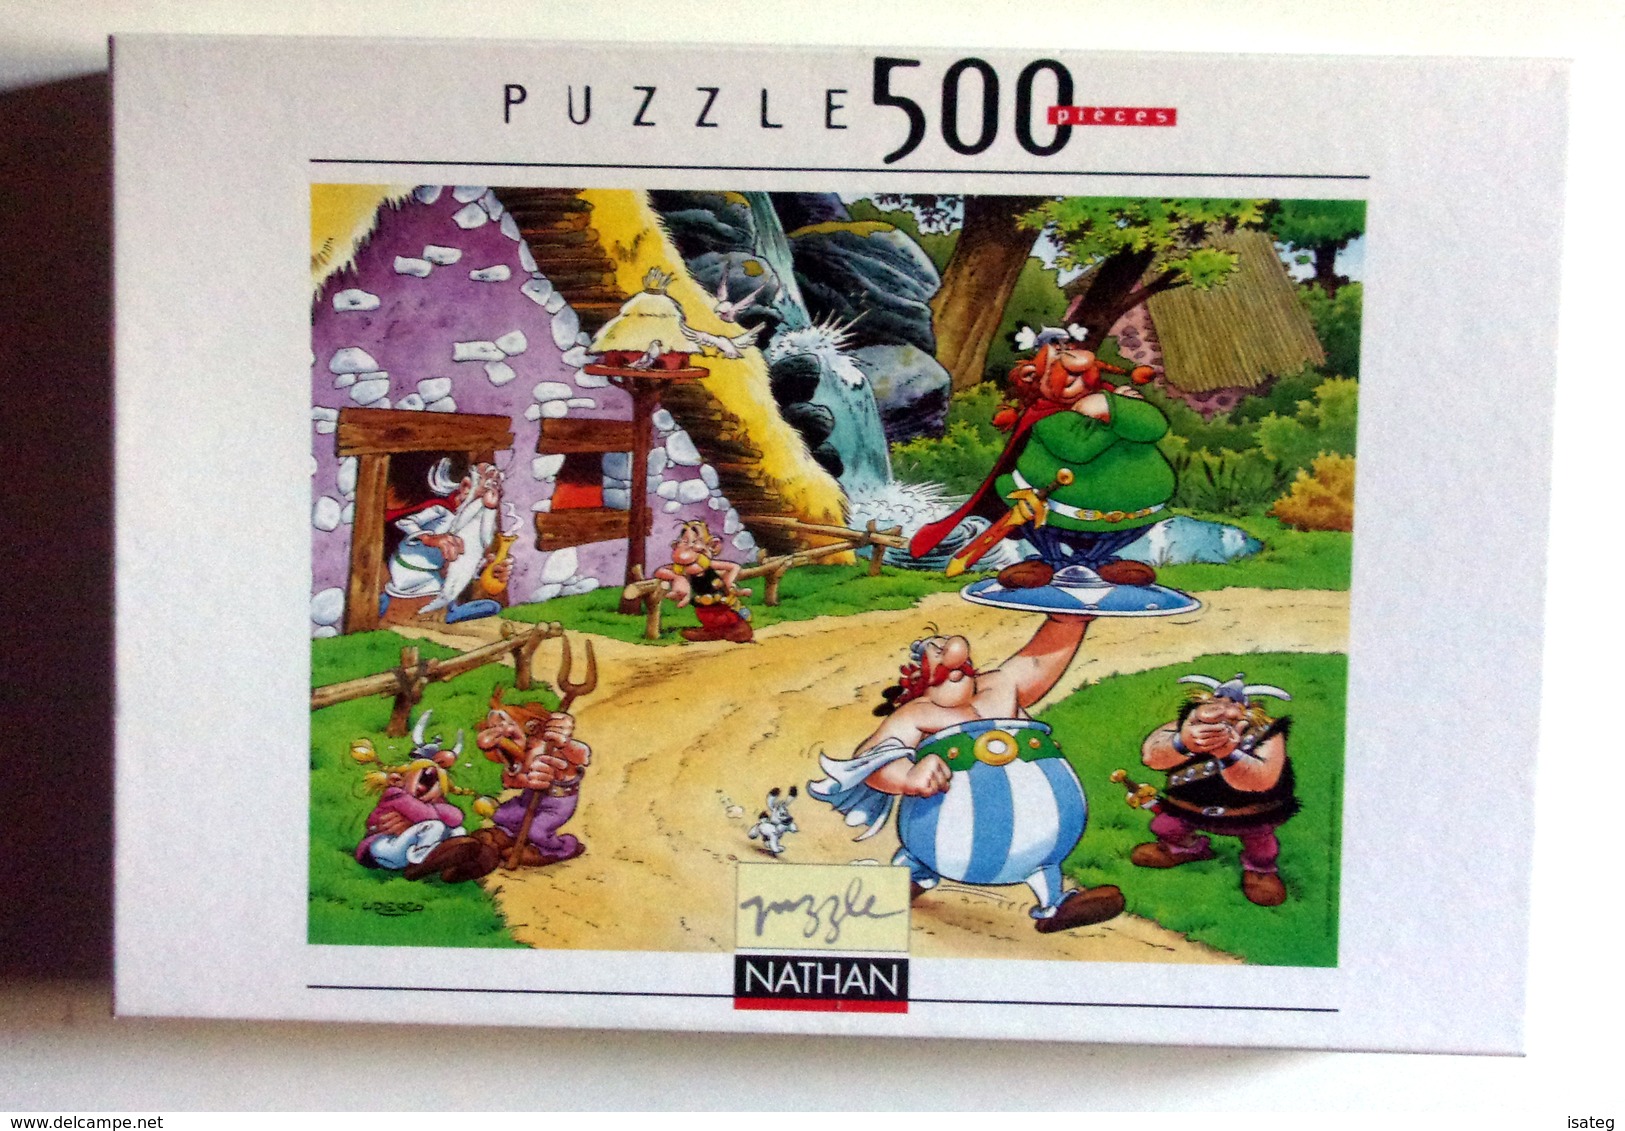 Puzzle Vintage Obelix Porteur - 500 Pieces - Nathan 2001 - Puzzle Games